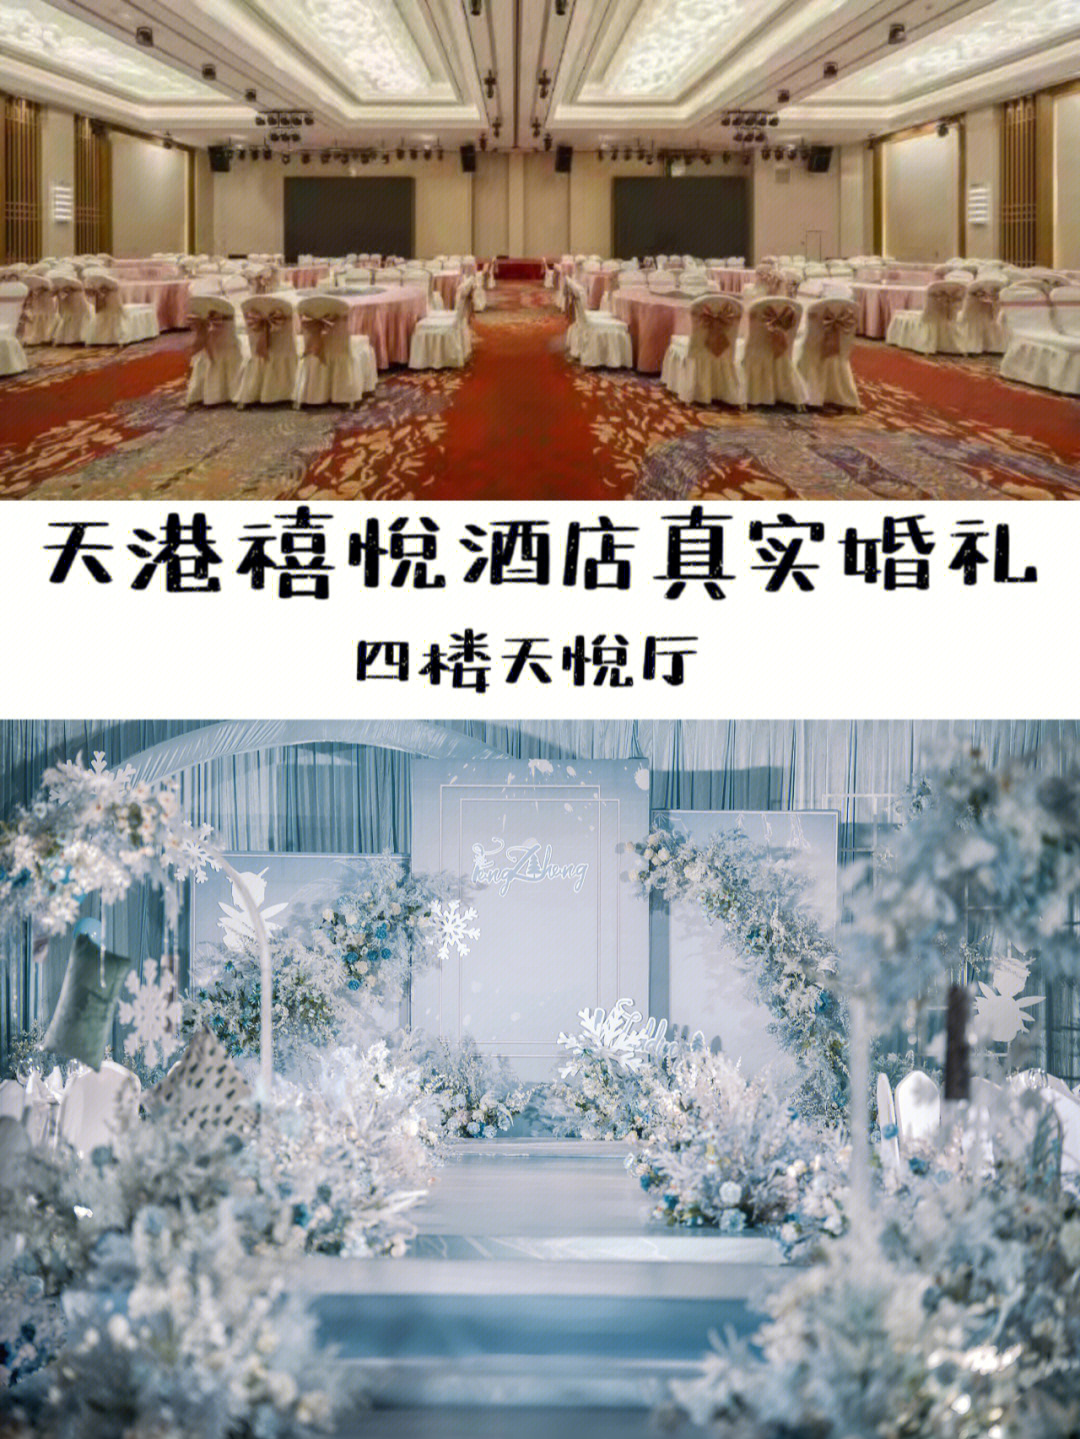 济南禧悦东方酒店婚宴图片